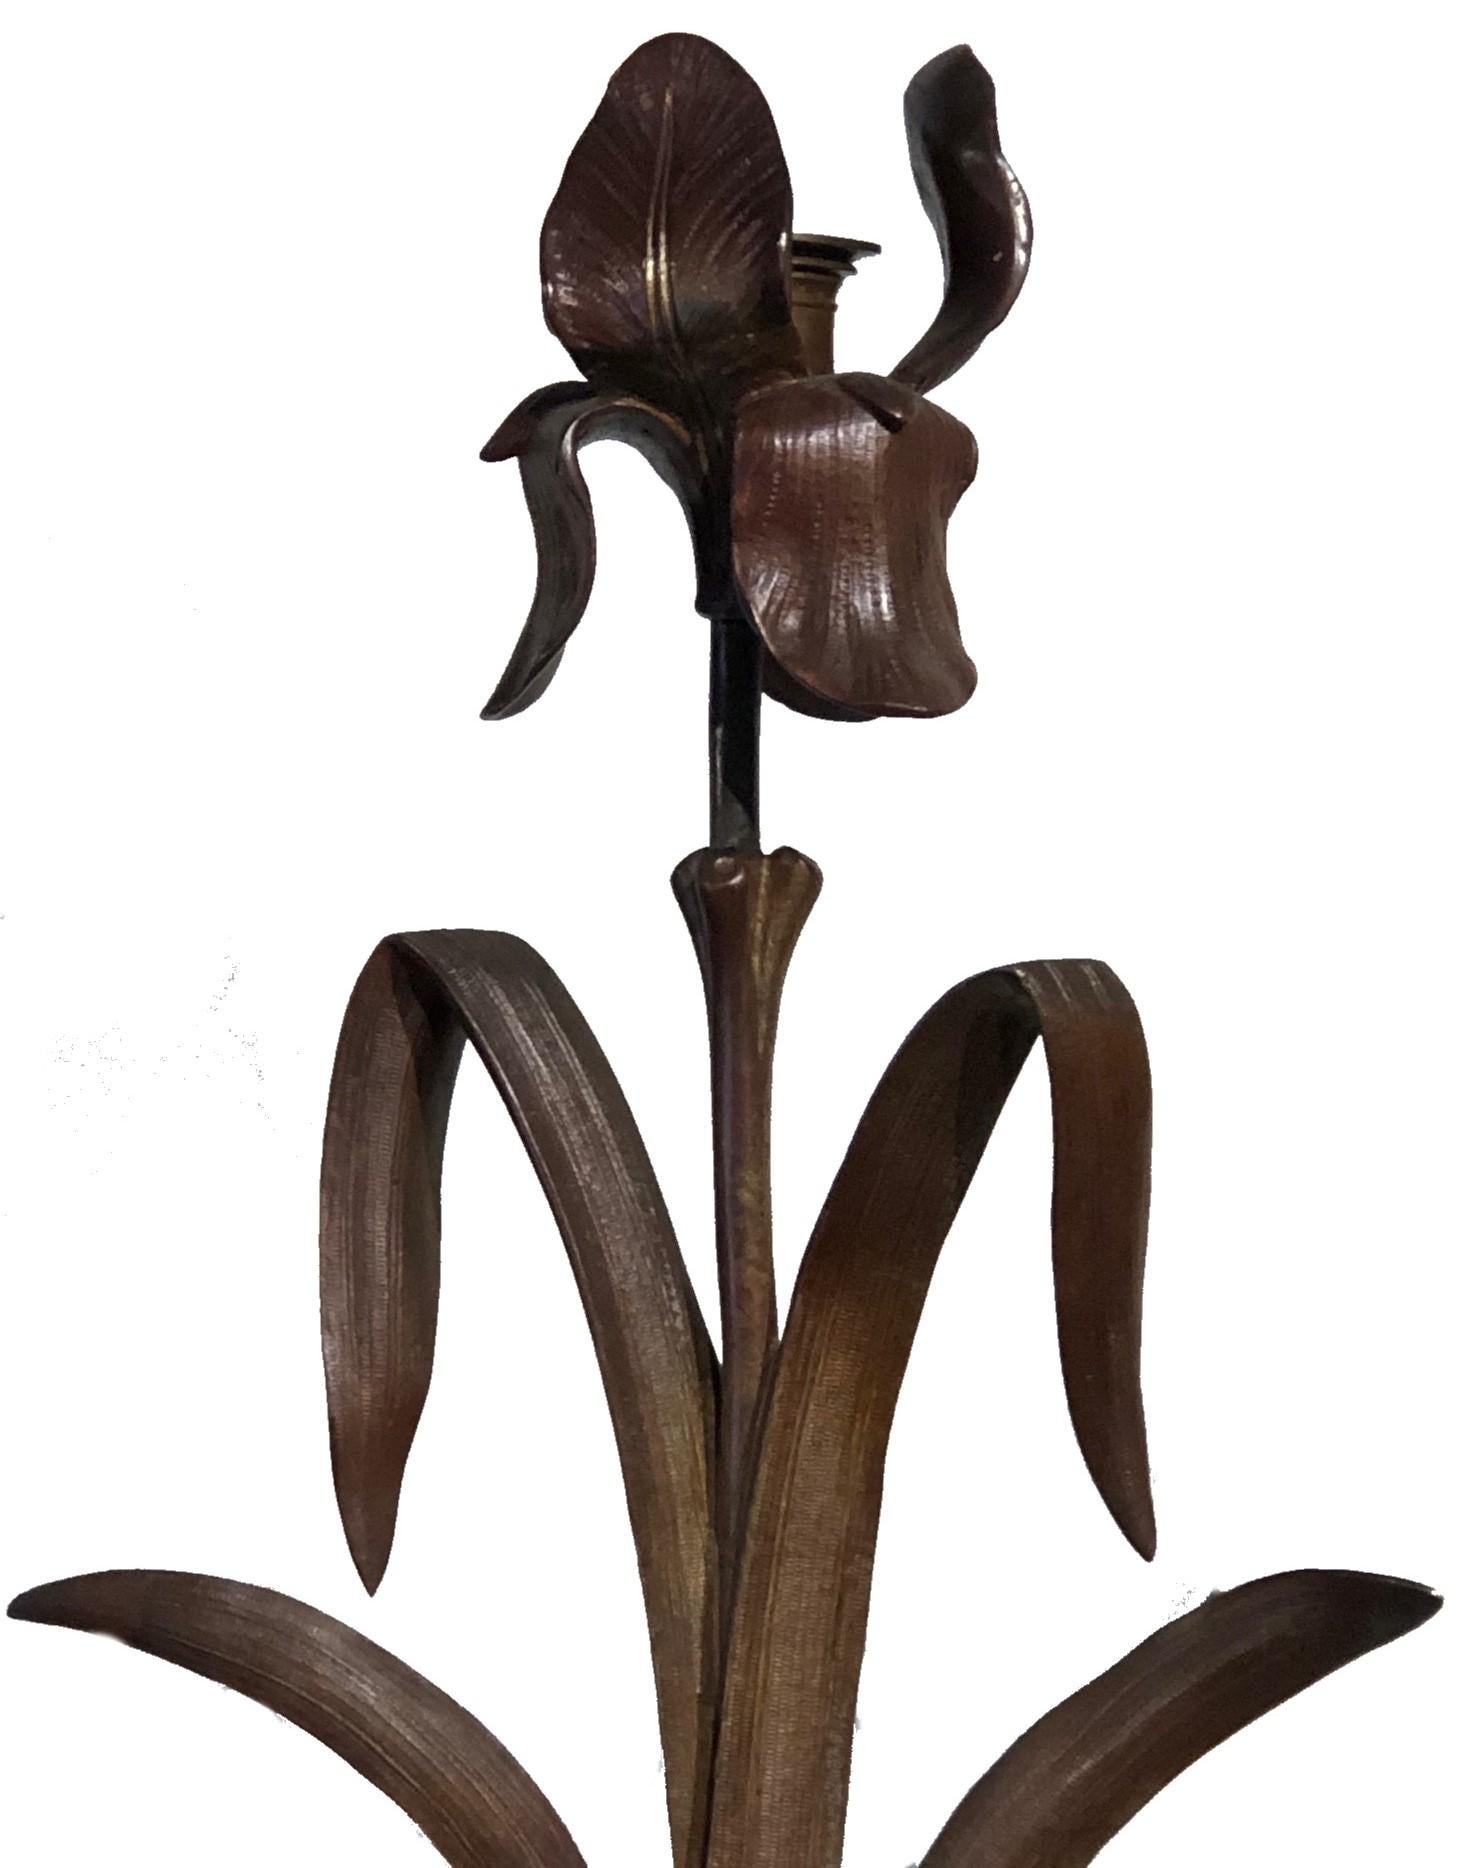 ÜBER IRIS-MOTIVE
Iris-Motive waren zur Zeit der Arts & Crafts-Bewegung sehr beliebt. Die Gattung dieser leicht zu stilisierenden Blume umfasst fast 300 Sorten, die in vielen Farben blühen. Daher stammt auch ihr Name: Iris, die griechische Göttin des